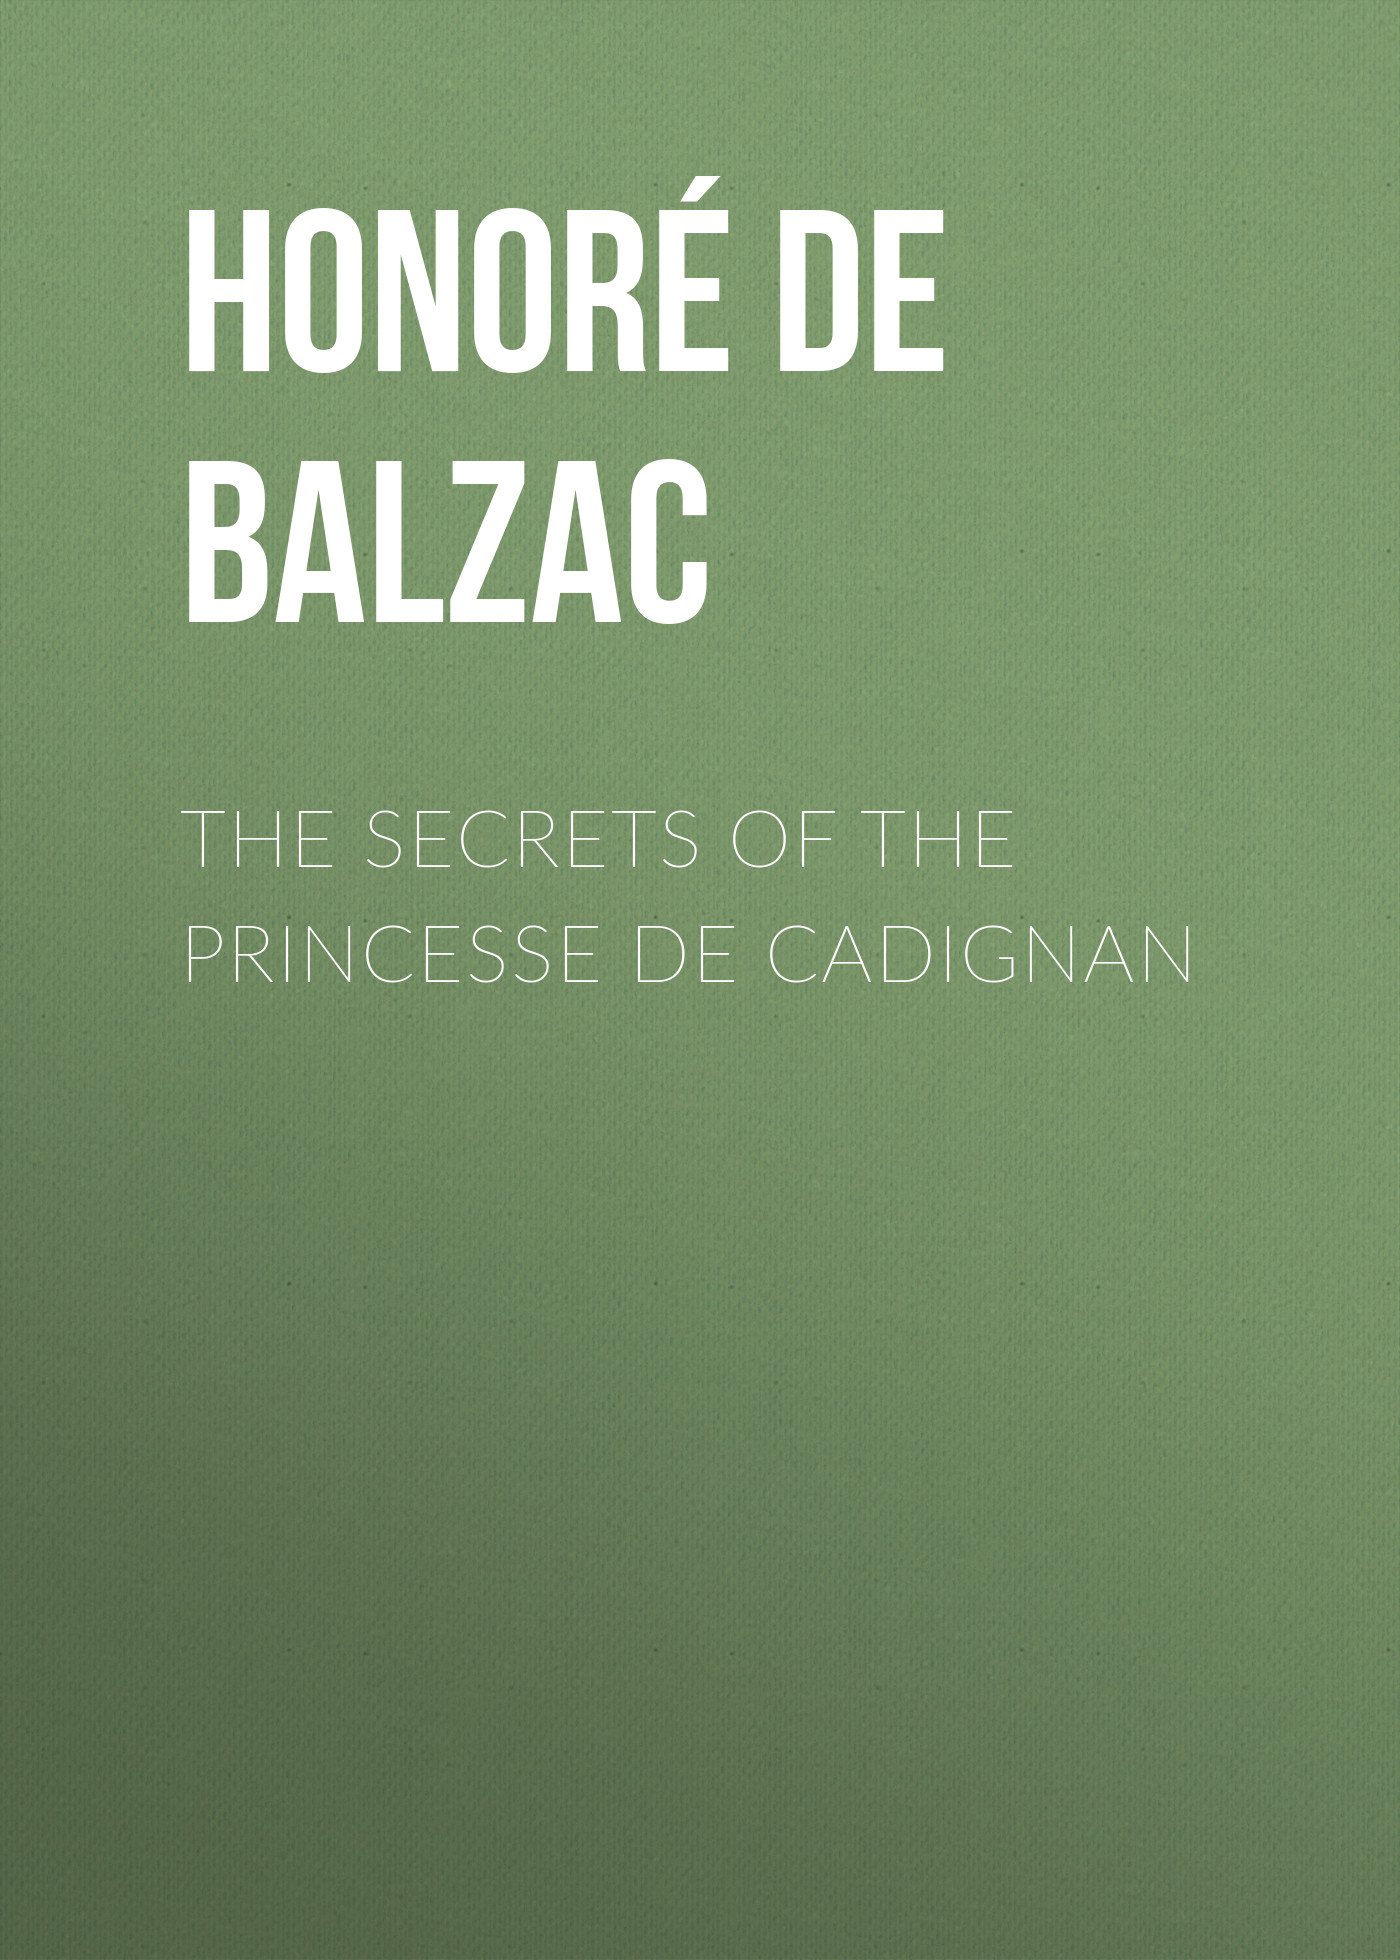 Книга The Secrets of the Princesse de Cadignan из серии , созданная Honoré Balzac, может относится к жанру Литература 19 века, Зарубежная старинная литература, Зарубежная классика. Стоимость электронной книги The Secrets of the Princesse de Cadignan с идентификатором 25019043 составляет 0 руб.